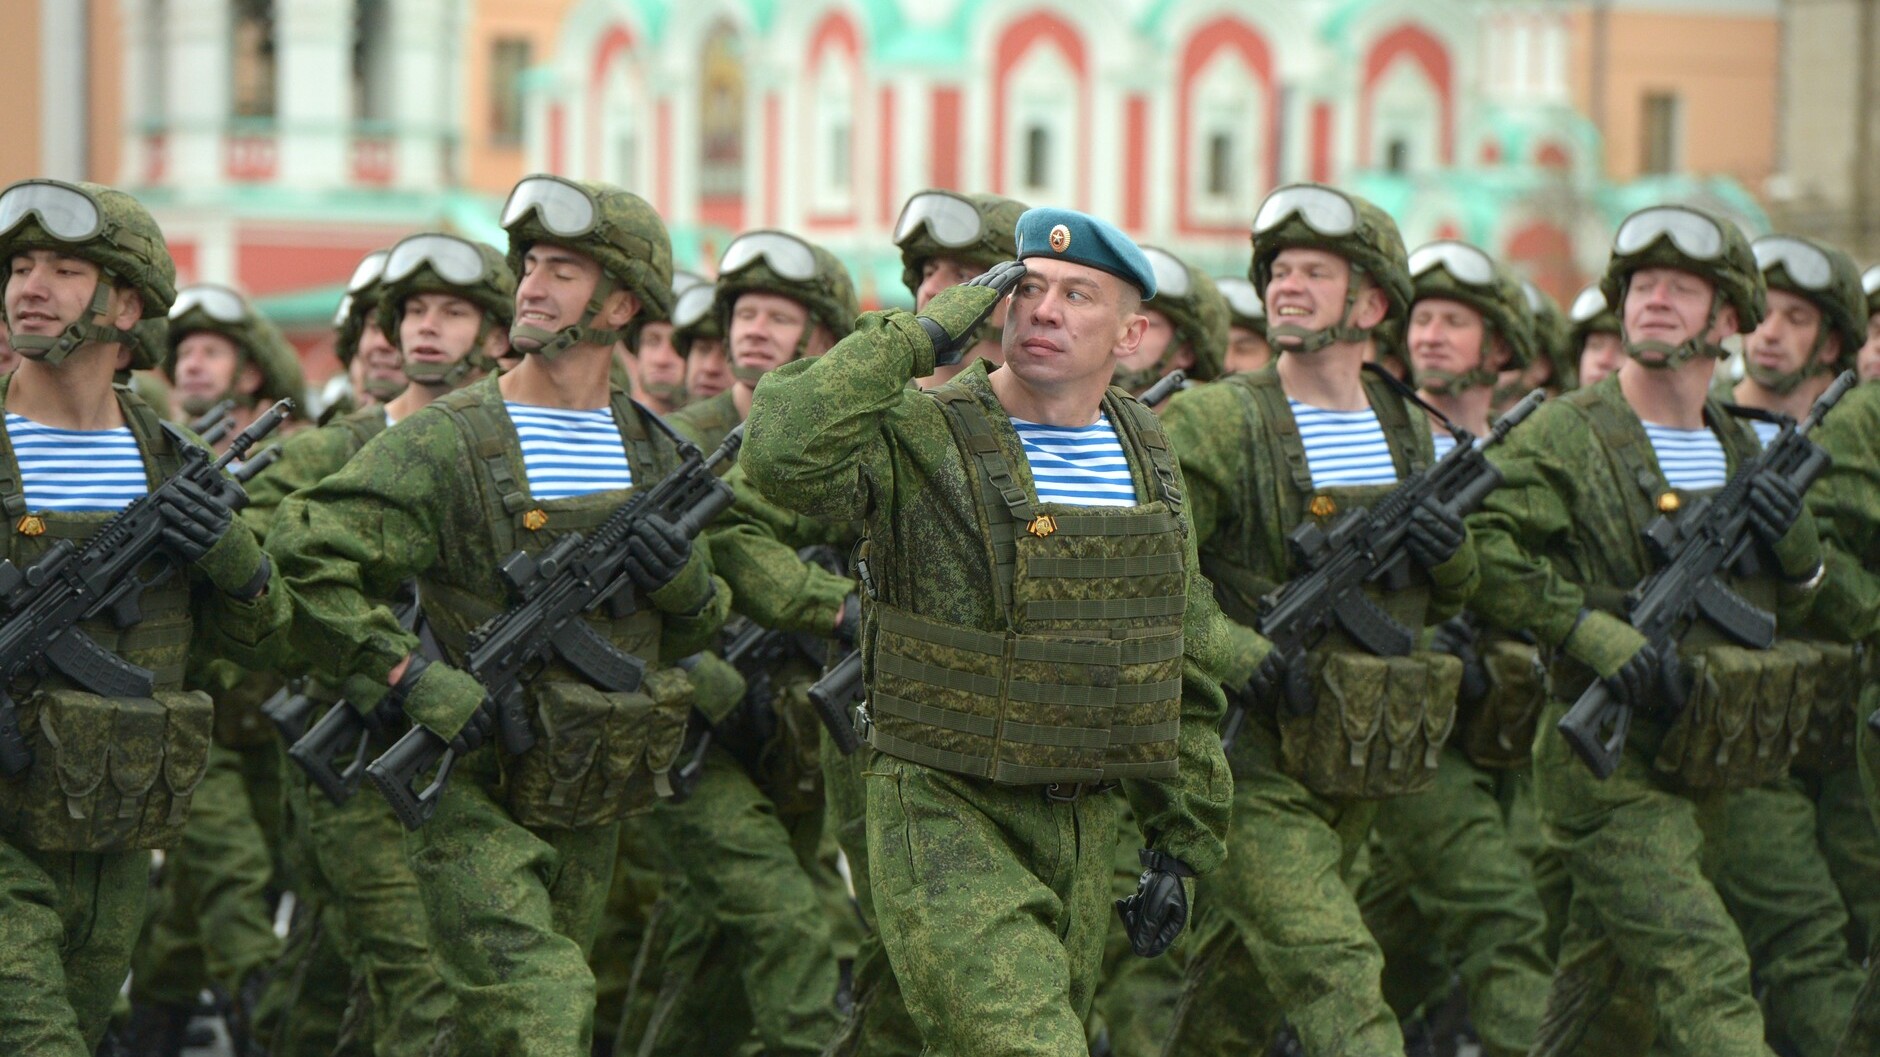 Приемы с оружием, песни и вальс: в Петербурге на военном параде была своя атмосфера